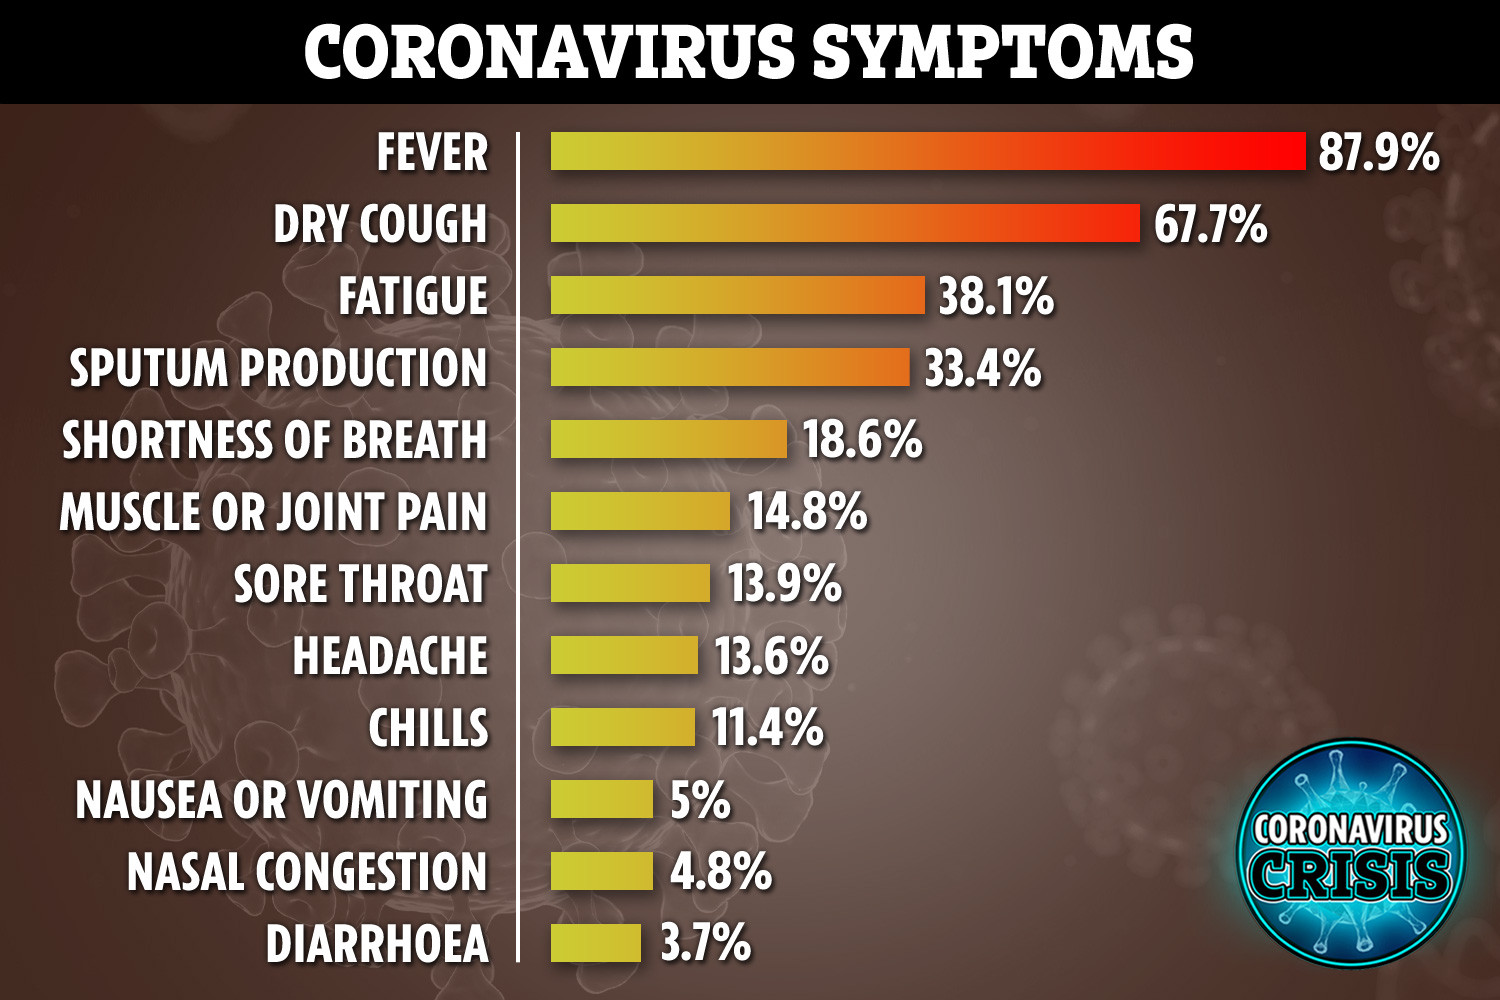   العلامات الأكثر شيوعًا للفيروس التاجي في الحالات المؤكدة من Covid-19 من الصين حتى 22 فبراير 2020